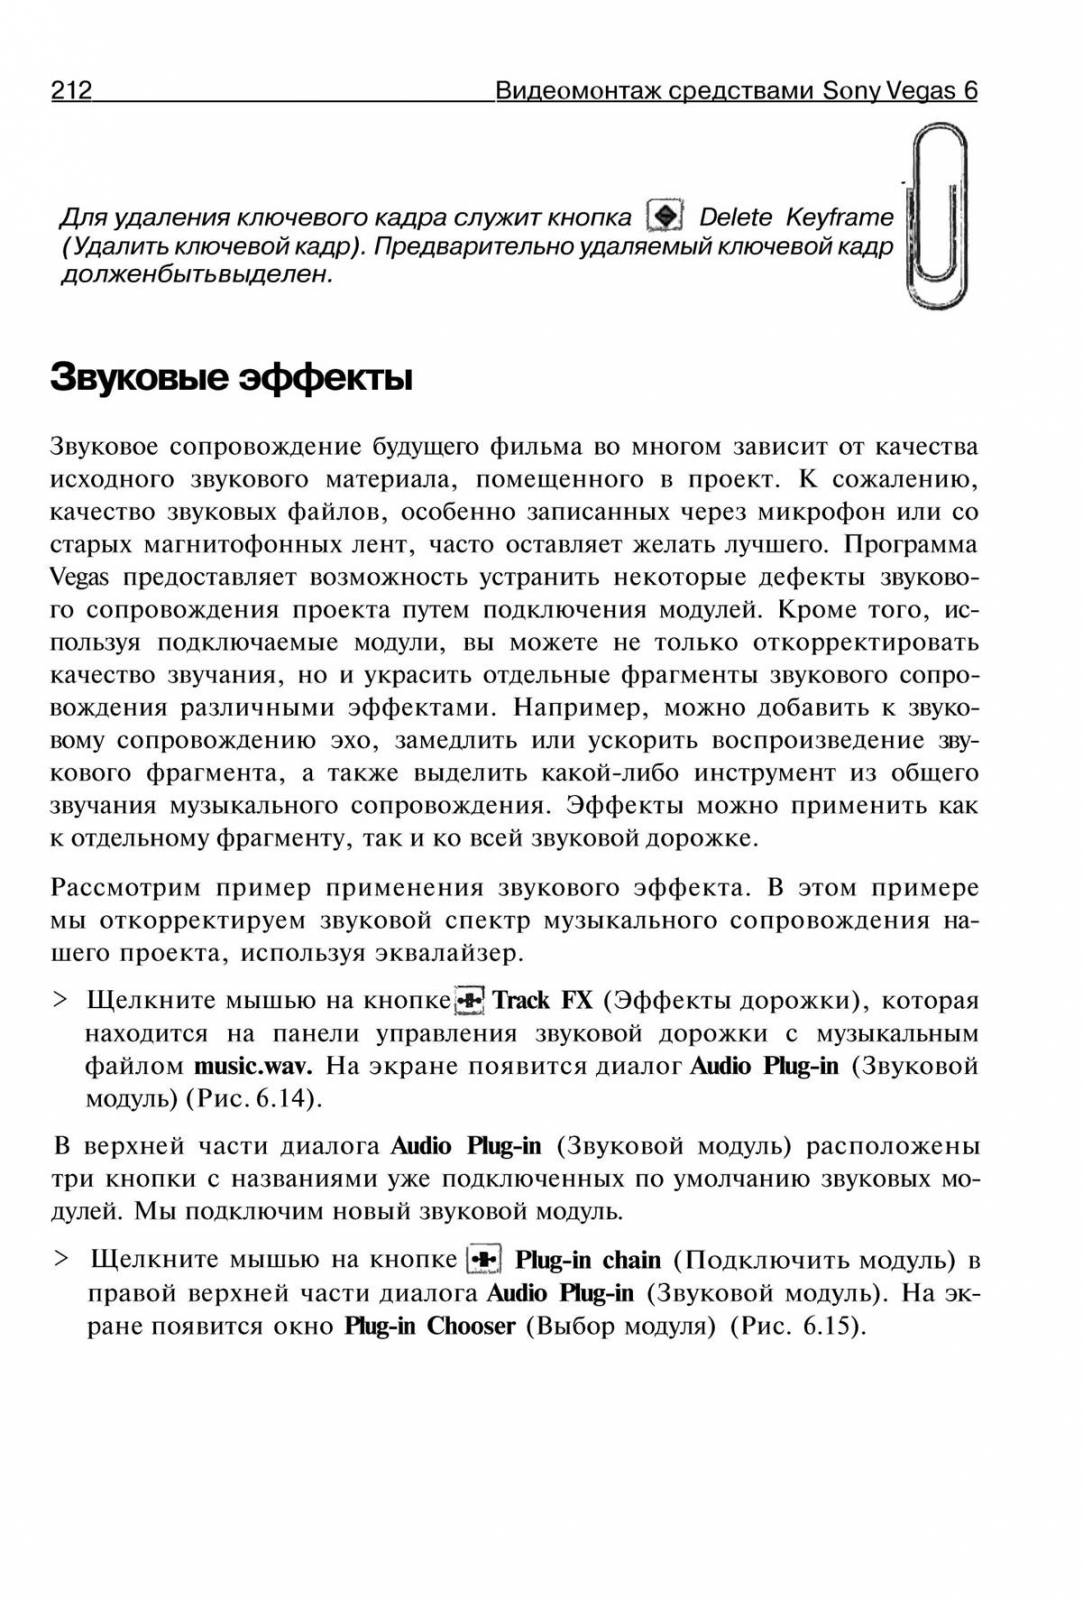 http://redaktori-uroki.3dn.ru/_ph/14/179233729.jpg